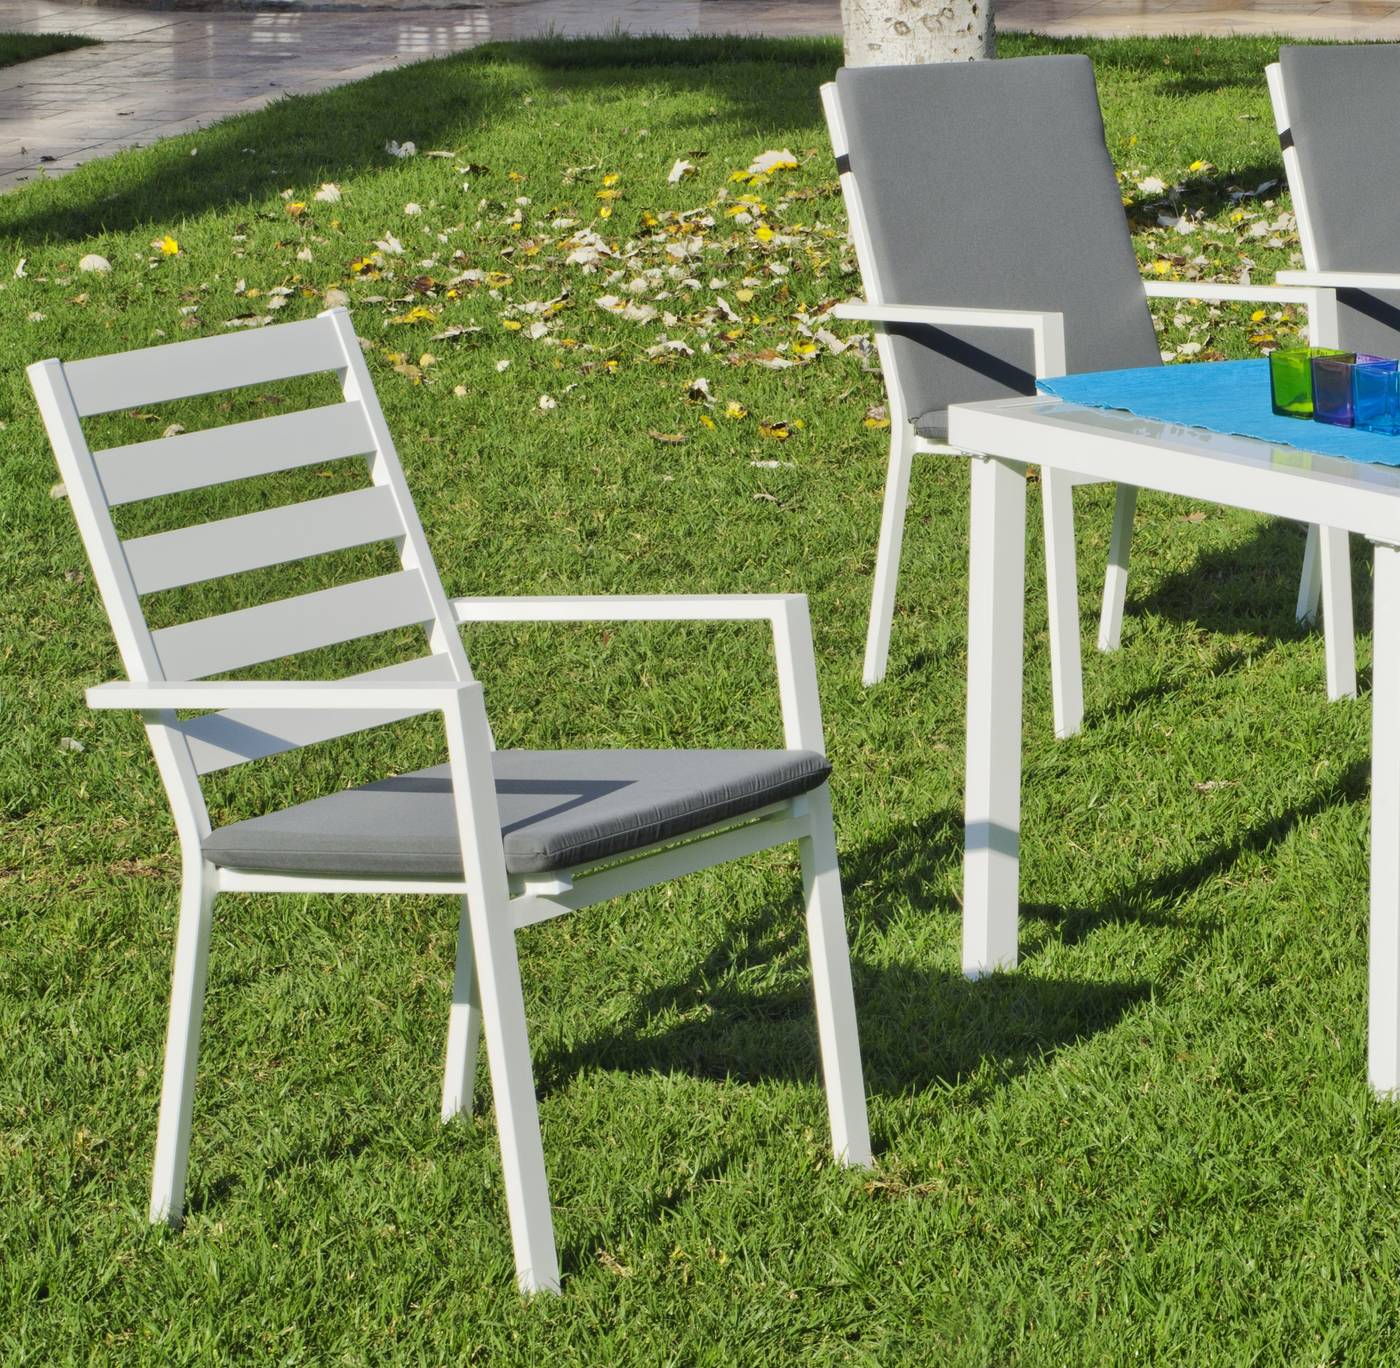 Conjunto Aluminio Acuario-Palma 150-4 - Conjunto aluminio color blanco: mesa de 150 cm. con tablero de cristal templado + 4 sillones apilables